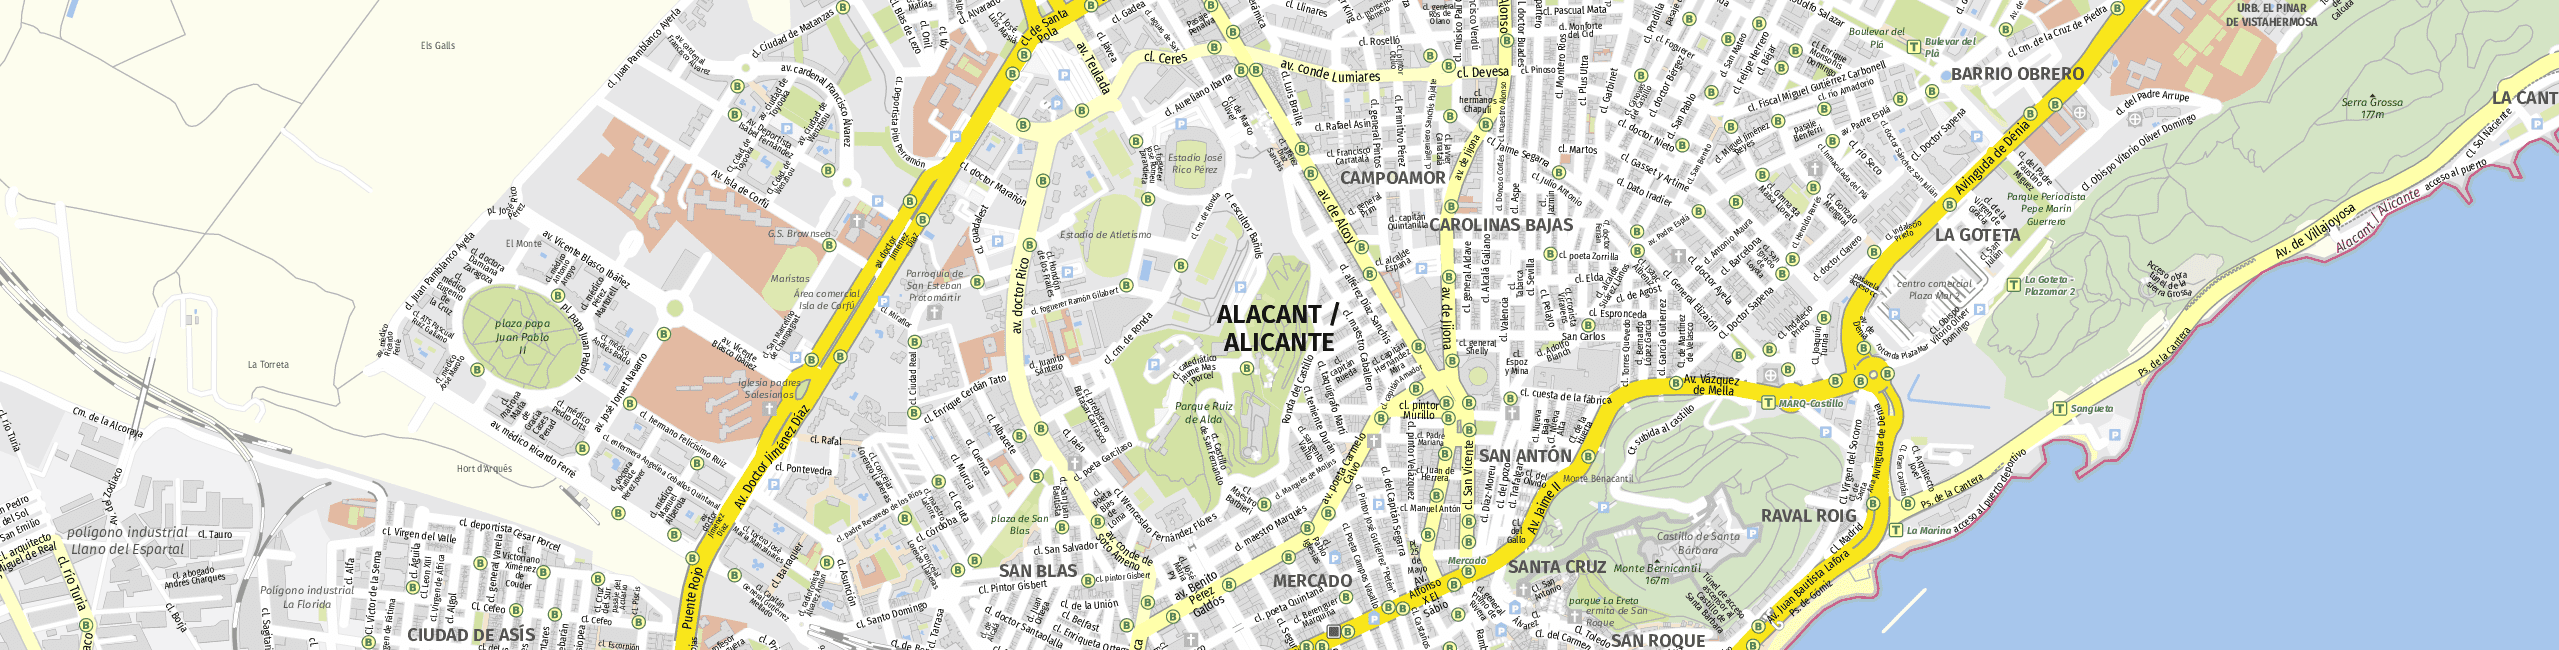 Stadtplan Alicante zum Downloaden.